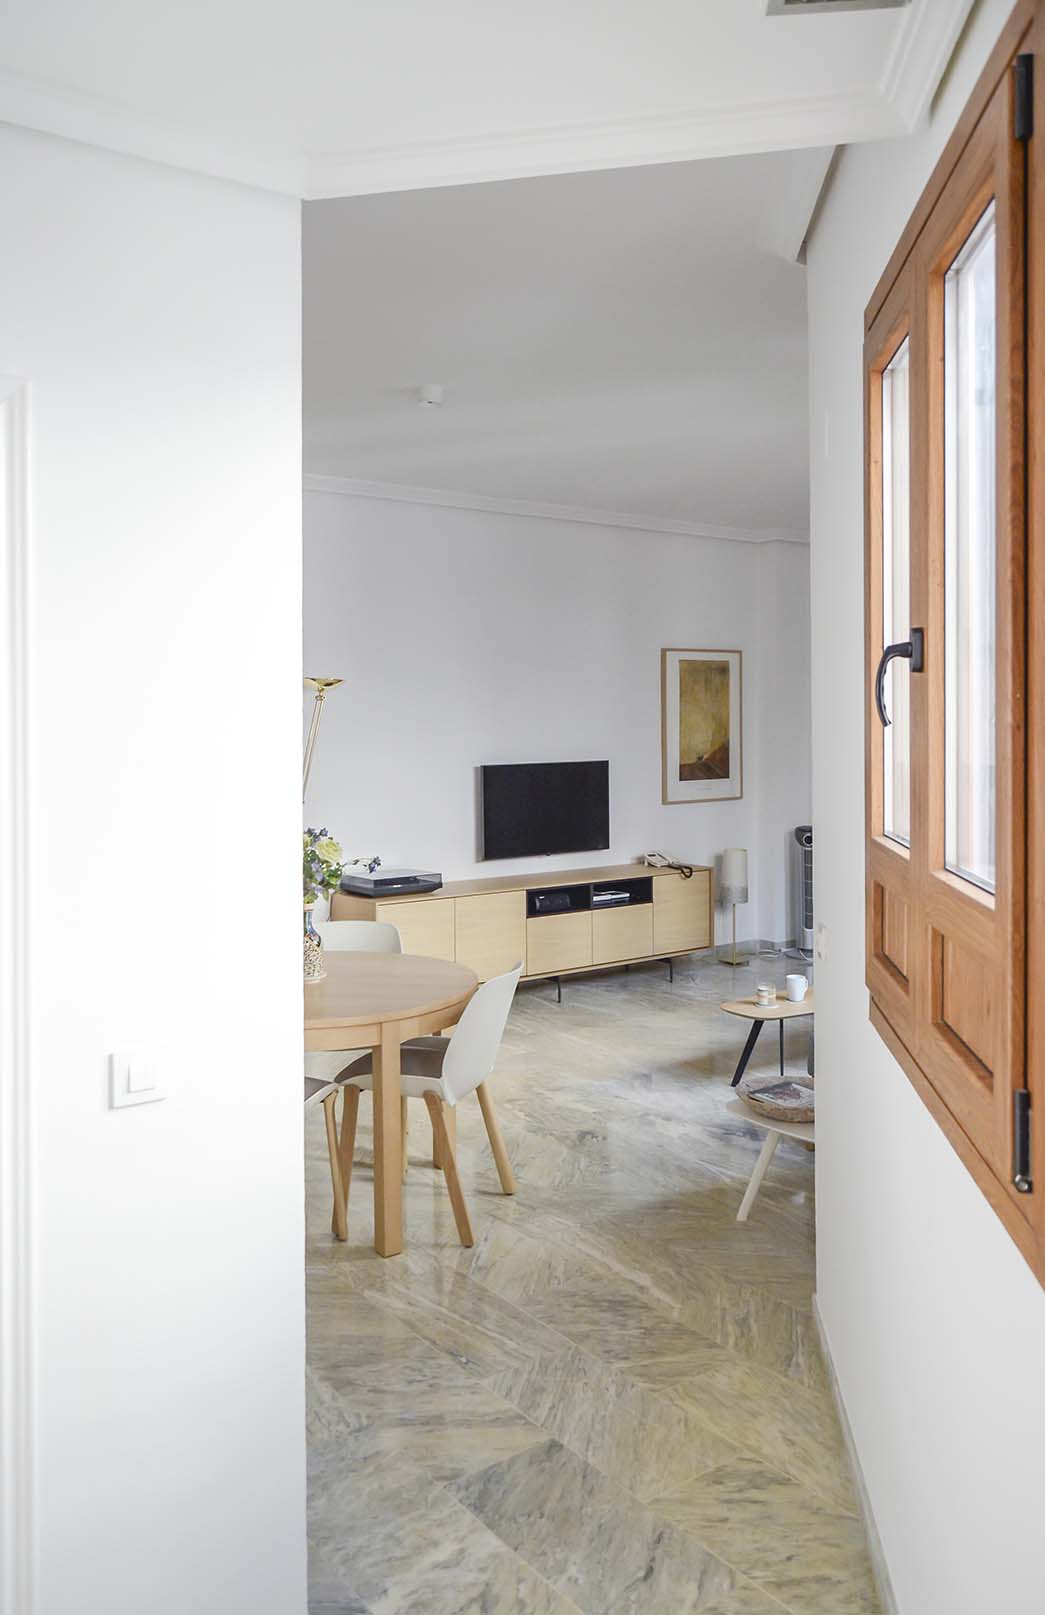 Las paredes y las puertas se han pintado en blanco cálido (RAL 9010), para subrayar la personalidad del mobiliario, y mejorar la luminosidad de un salón interior. La iluminación se potenció mediante unos miniplafones ópticos que subrayan la discreción de la intervención.